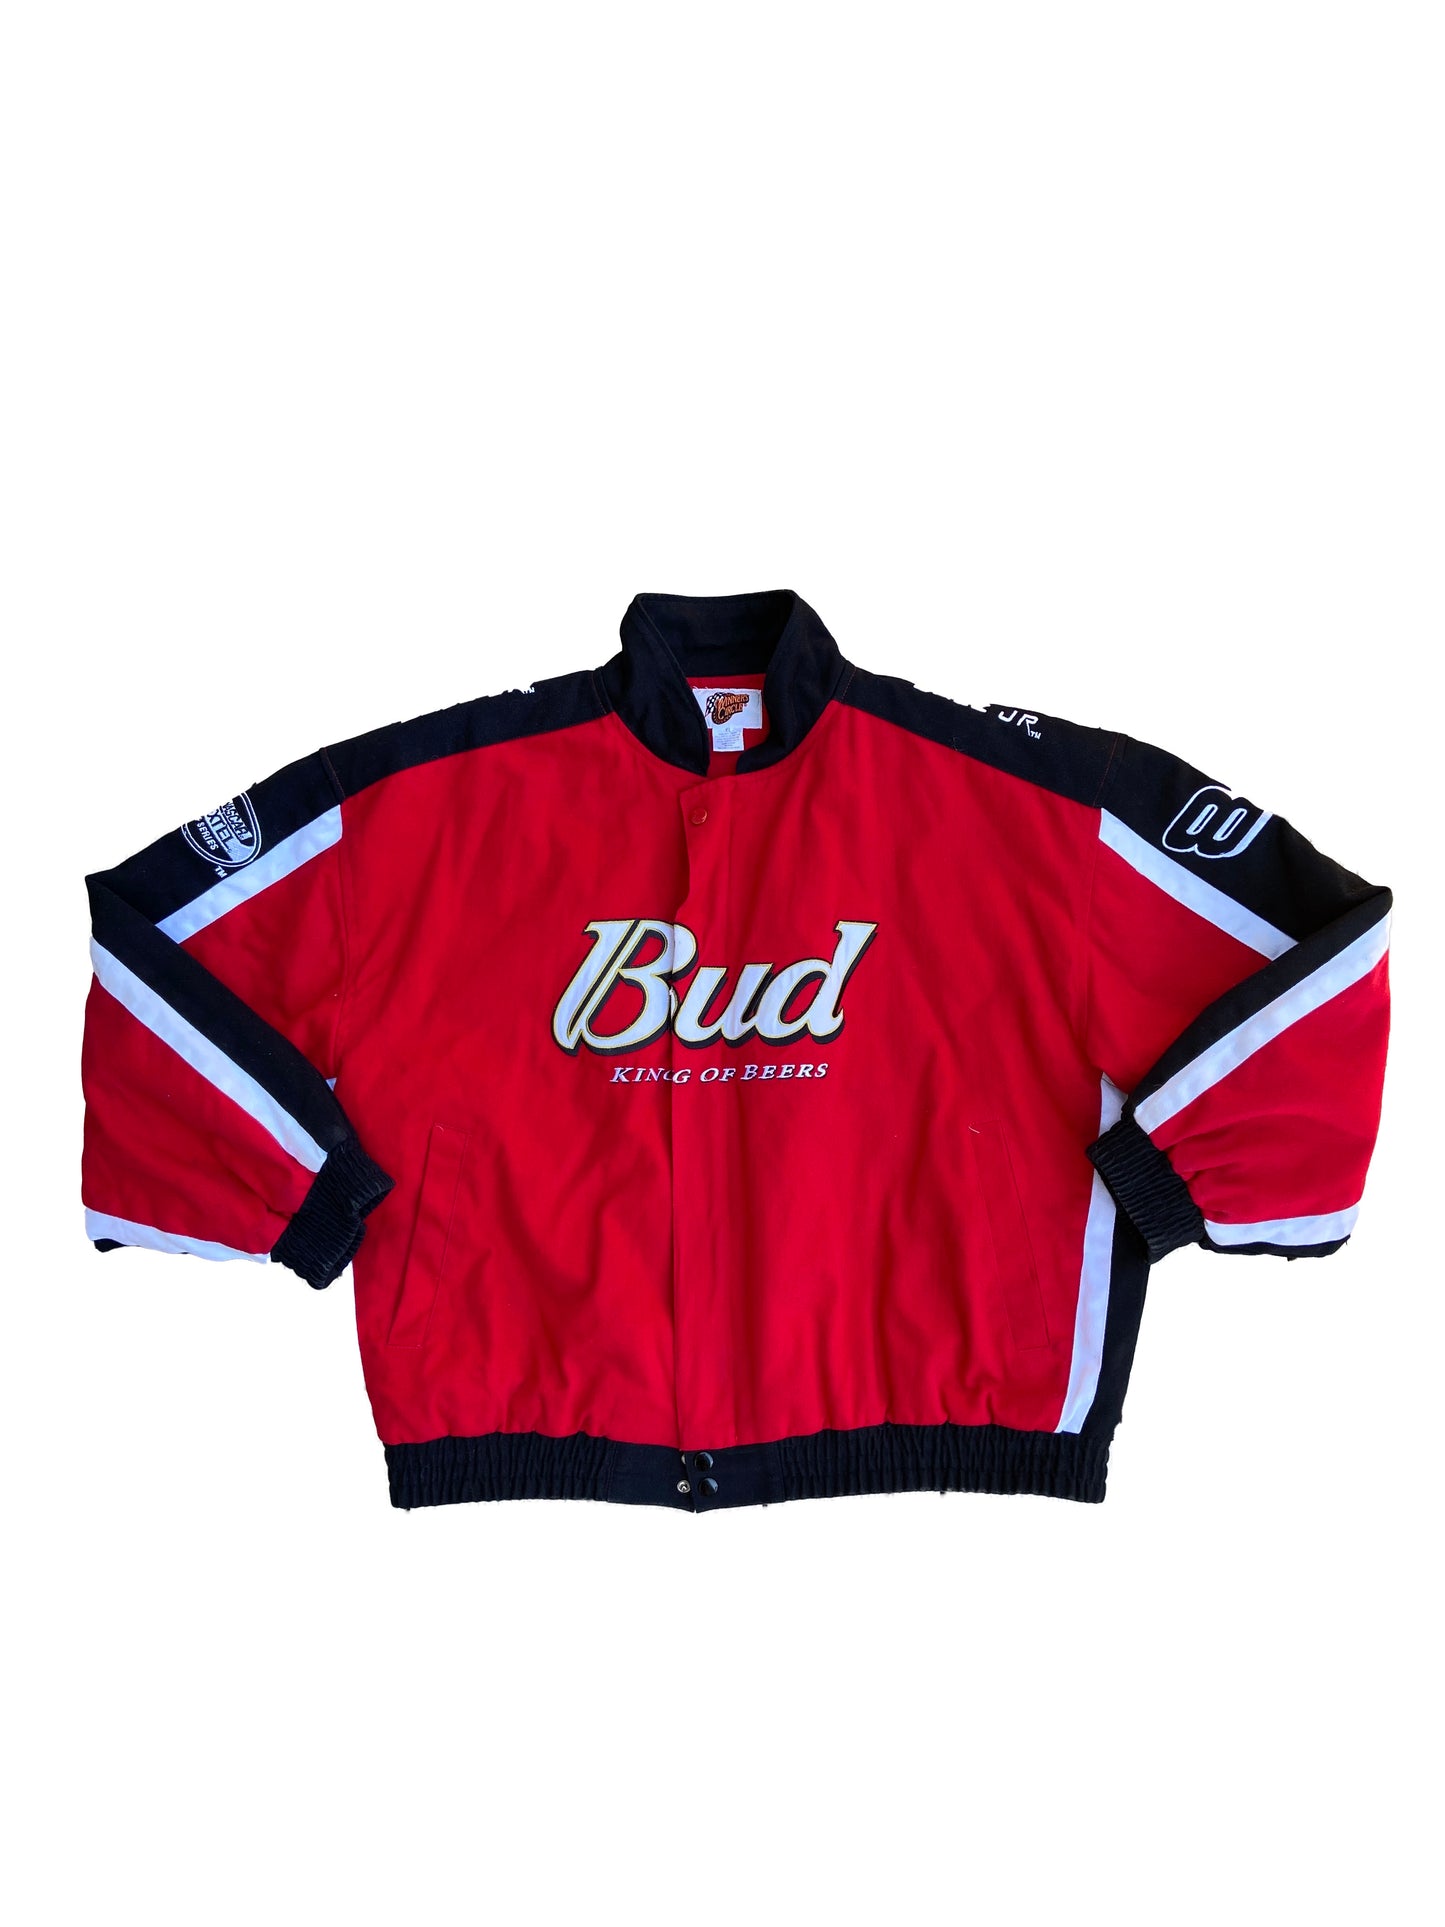 Vintage Nascar Dale Earnhardt Jr. Budweiser Race Jacket Red